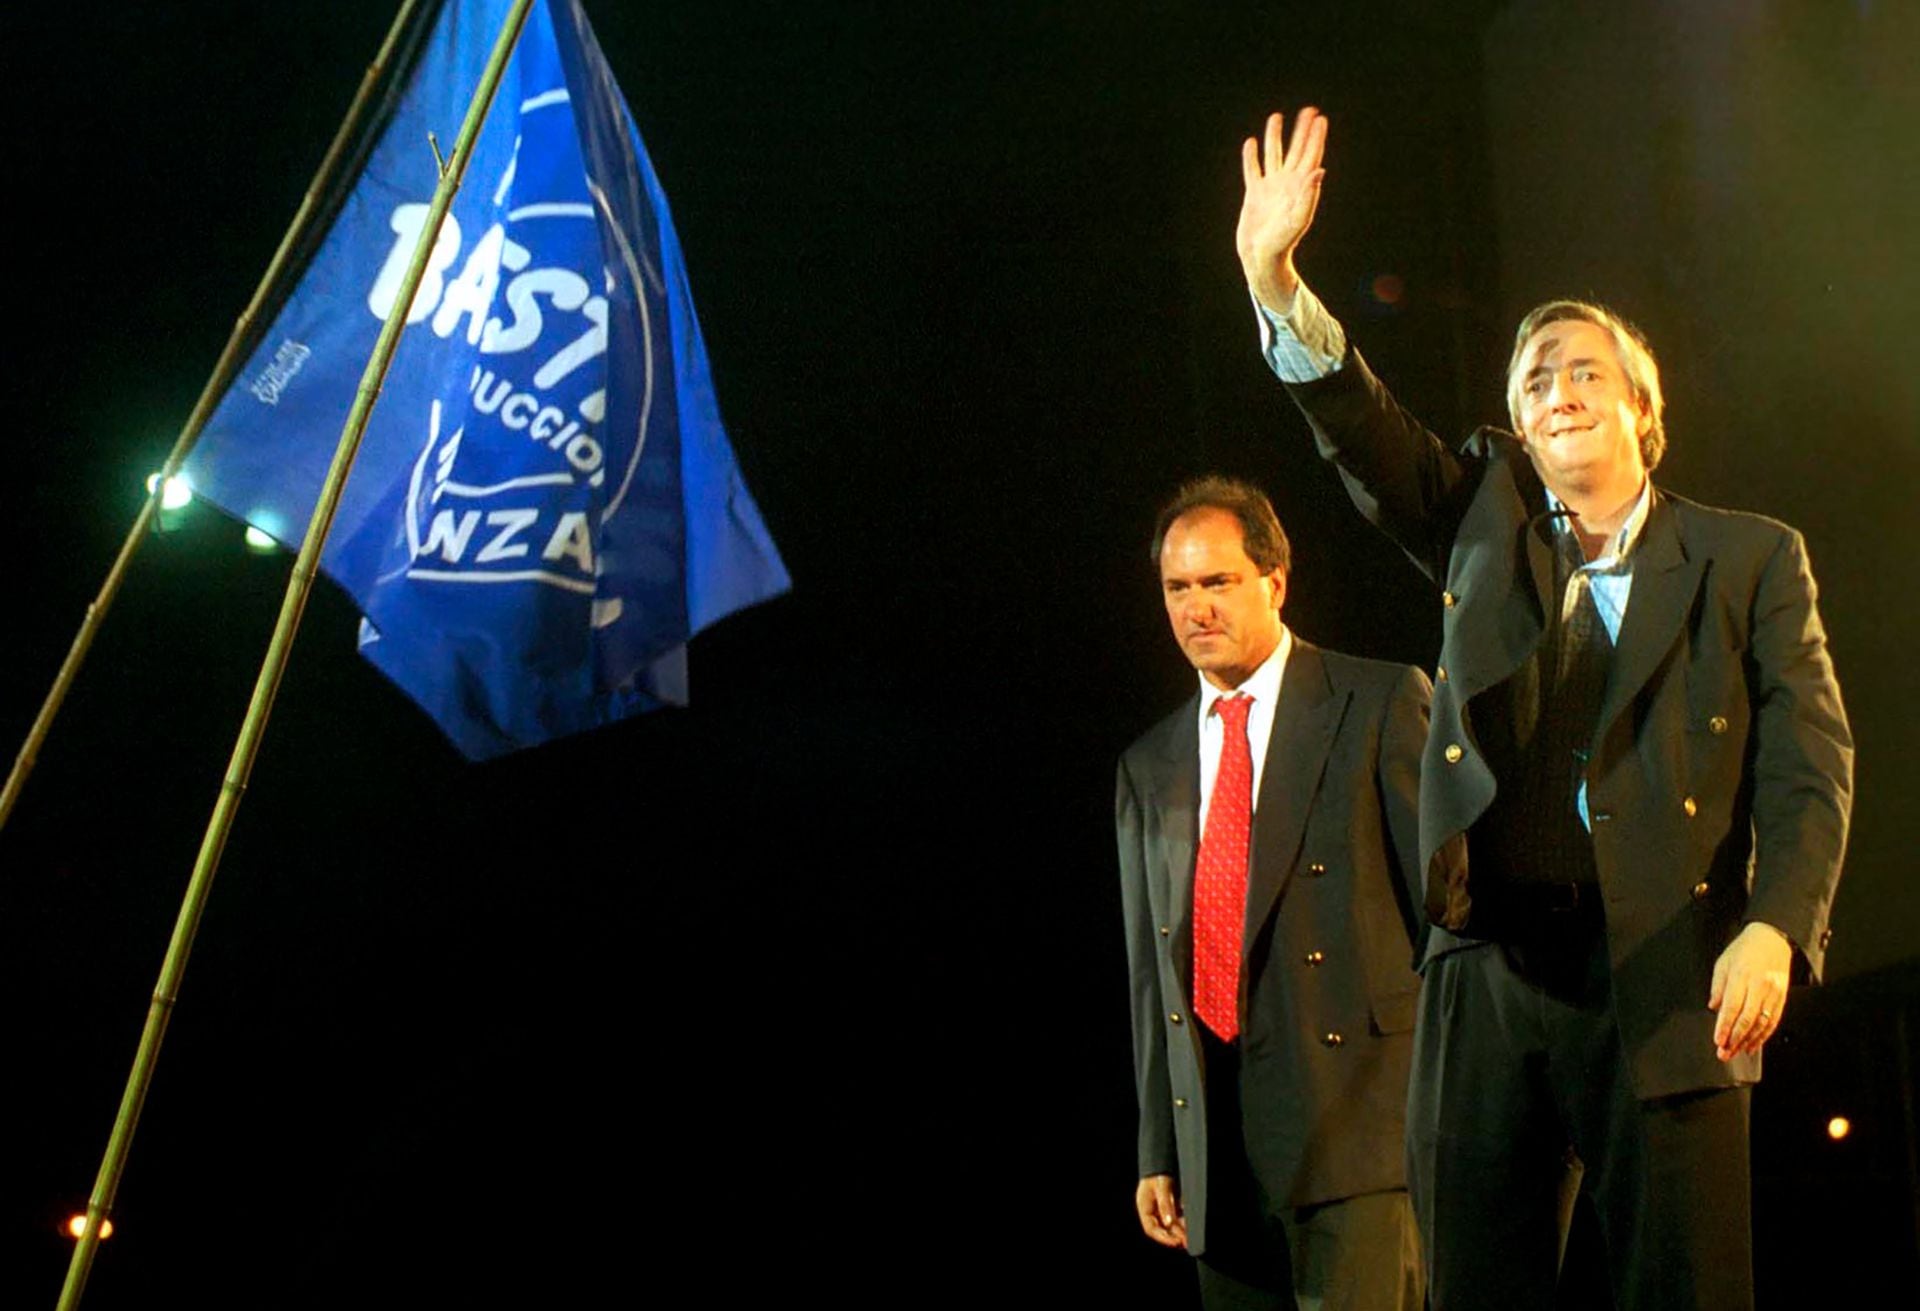  En el 2003, de la mano de Alberto Fernández y con apenas el 22% de los votos obtenidos en la primera vuelta, la fórmula Néstor Kirchner-Daniel Scioli se consagró victoriosa, luego de la renuncia de Carlos Menem a pocos días de la segunda vuelta. 